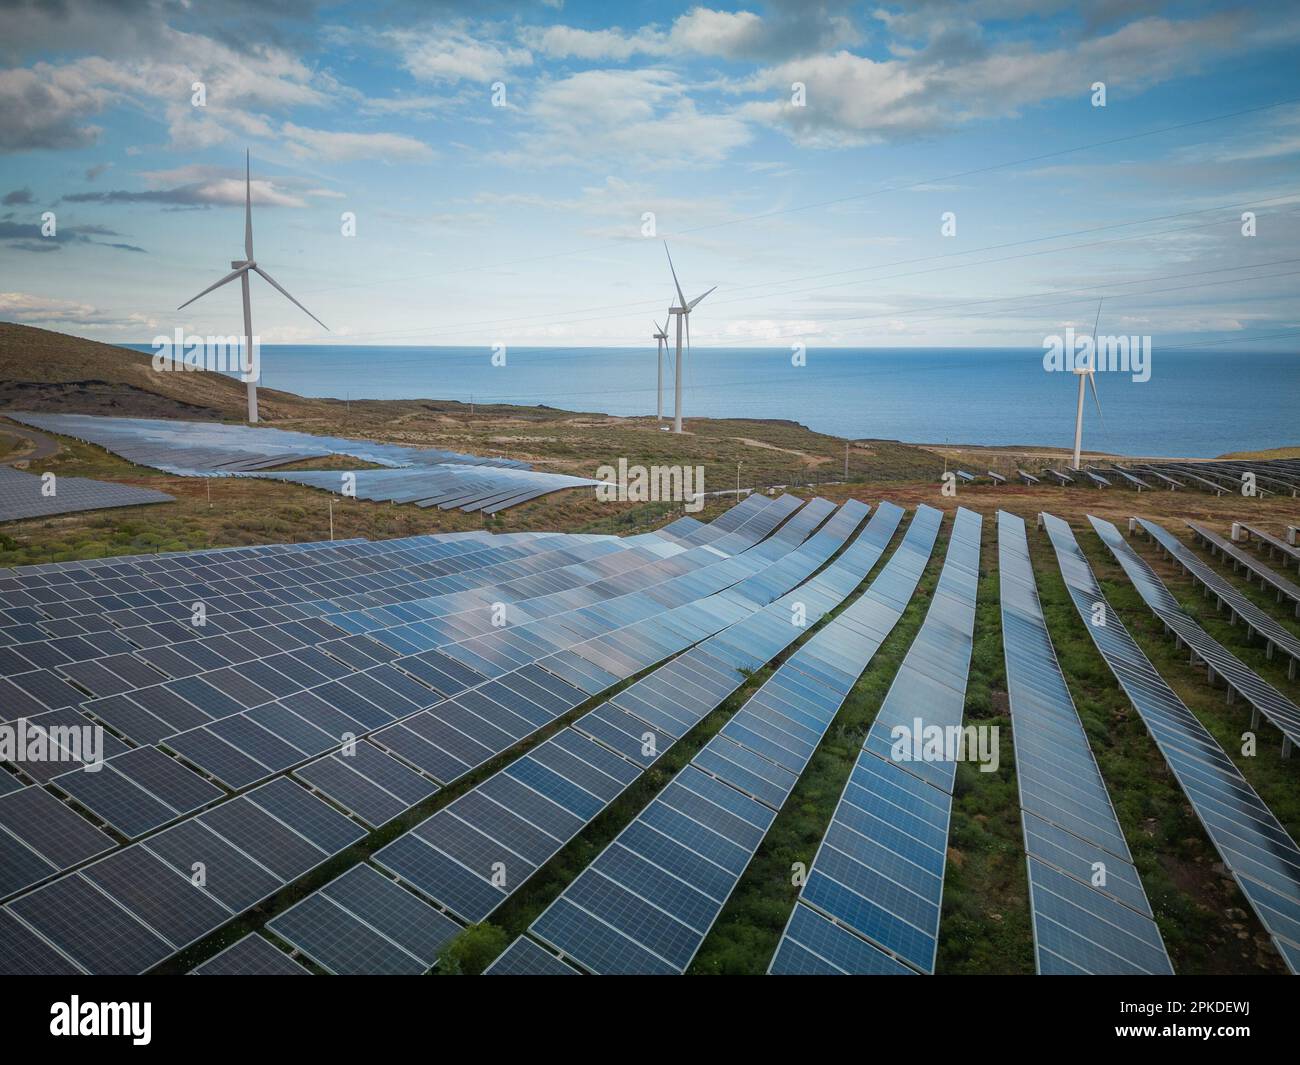 Centrale solaire avec panneaux photovoltaïques et éoliennes pour produire de l'énergie renouvelable Banque D'Images